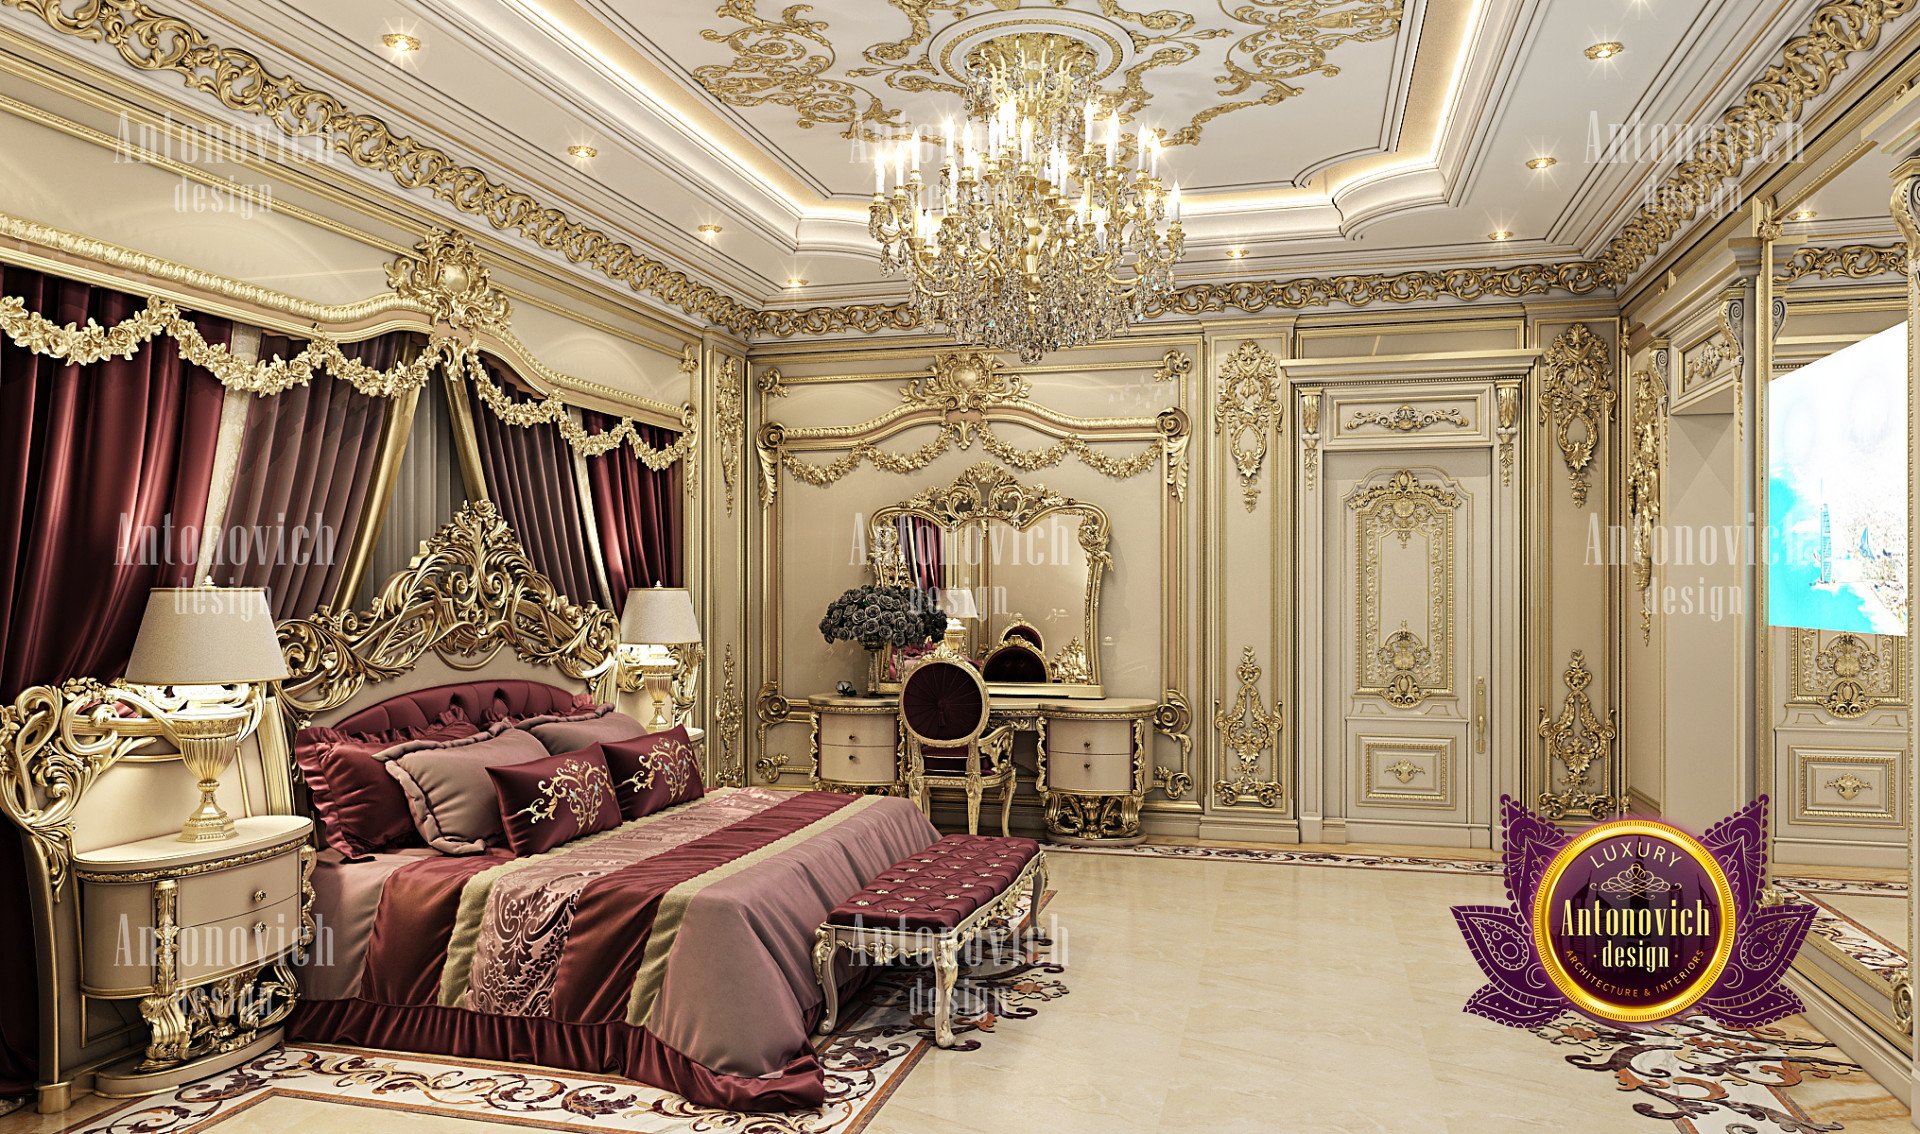 Splendid luxury bedroom interior